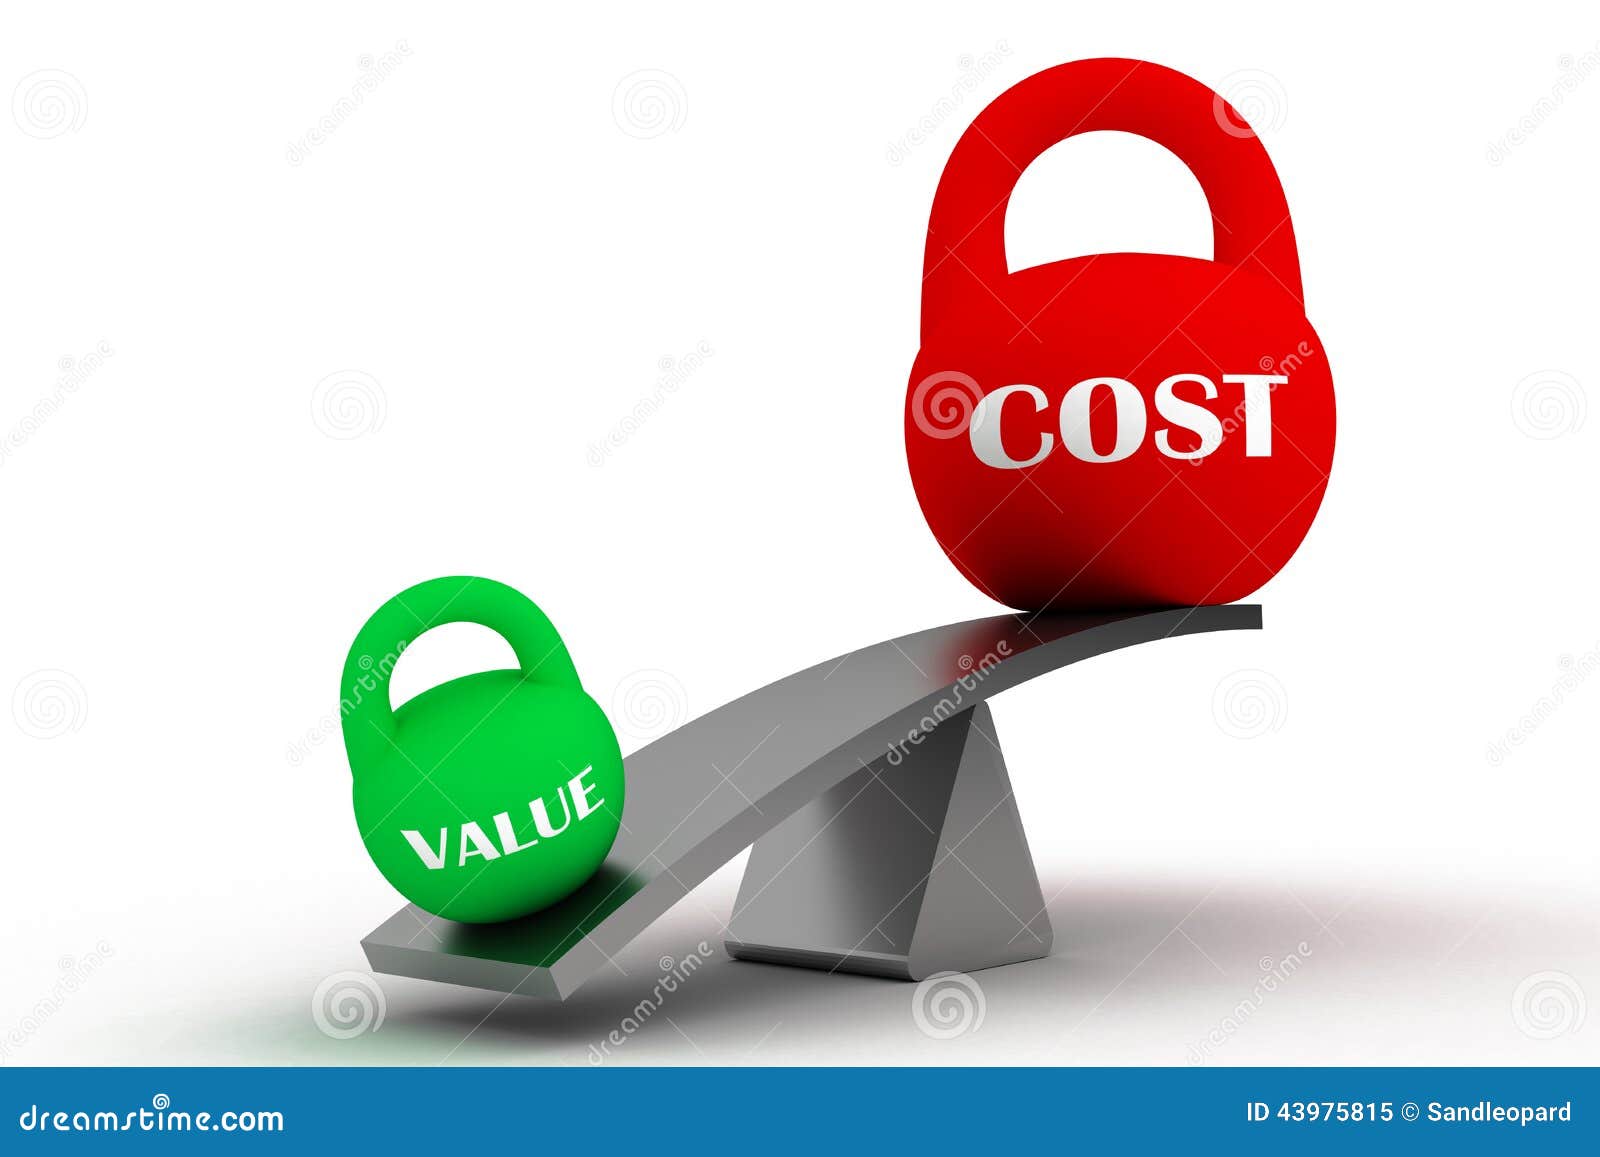 value vs cost